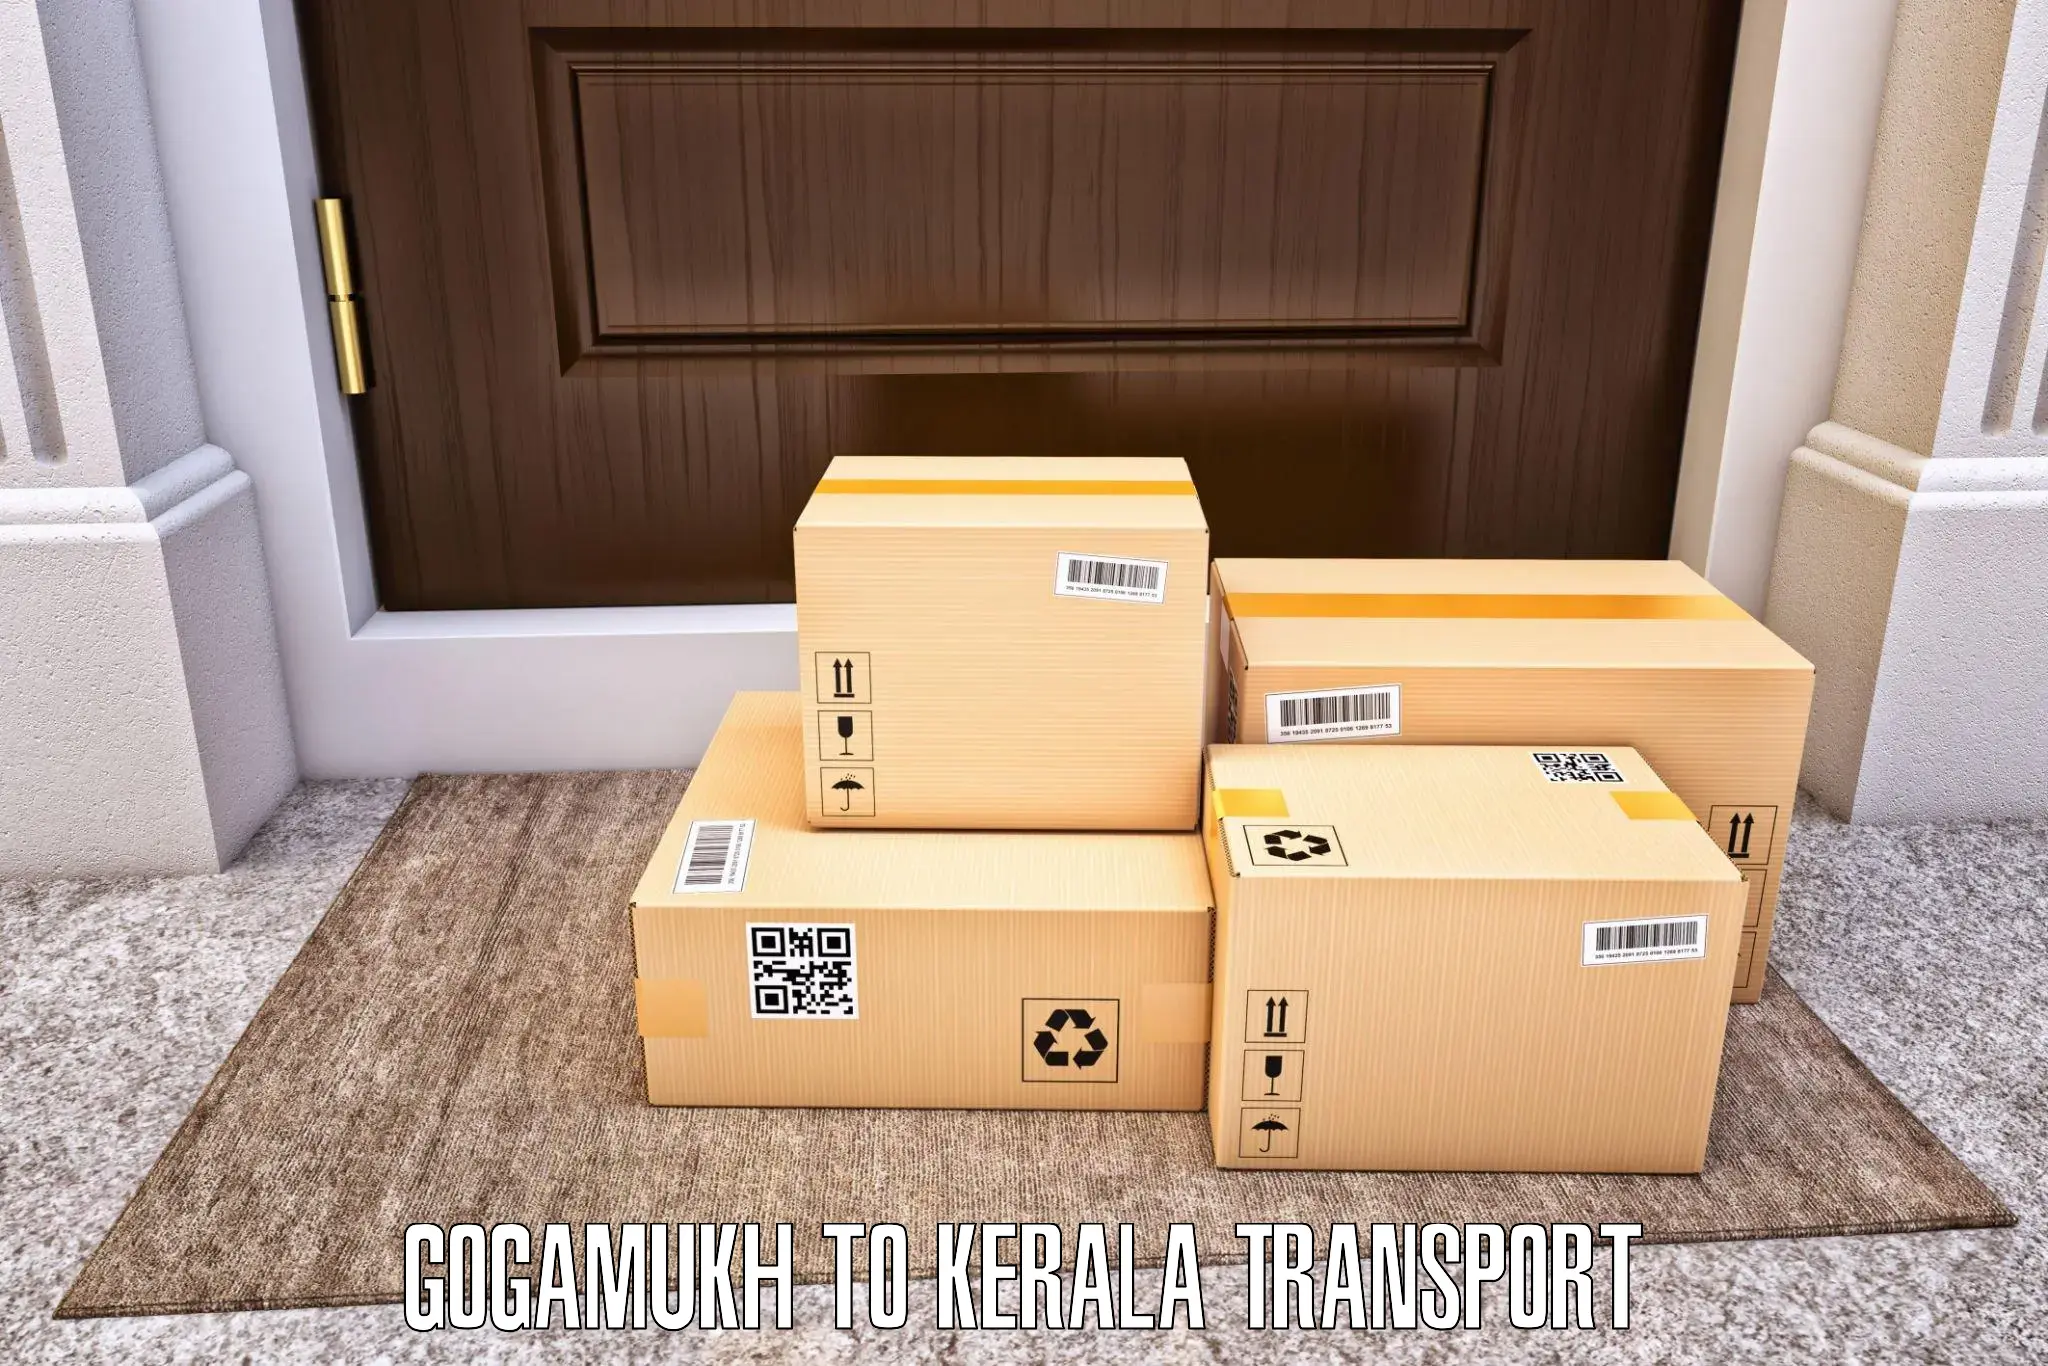 Best transport services in India Gogamukh to Elamakkara